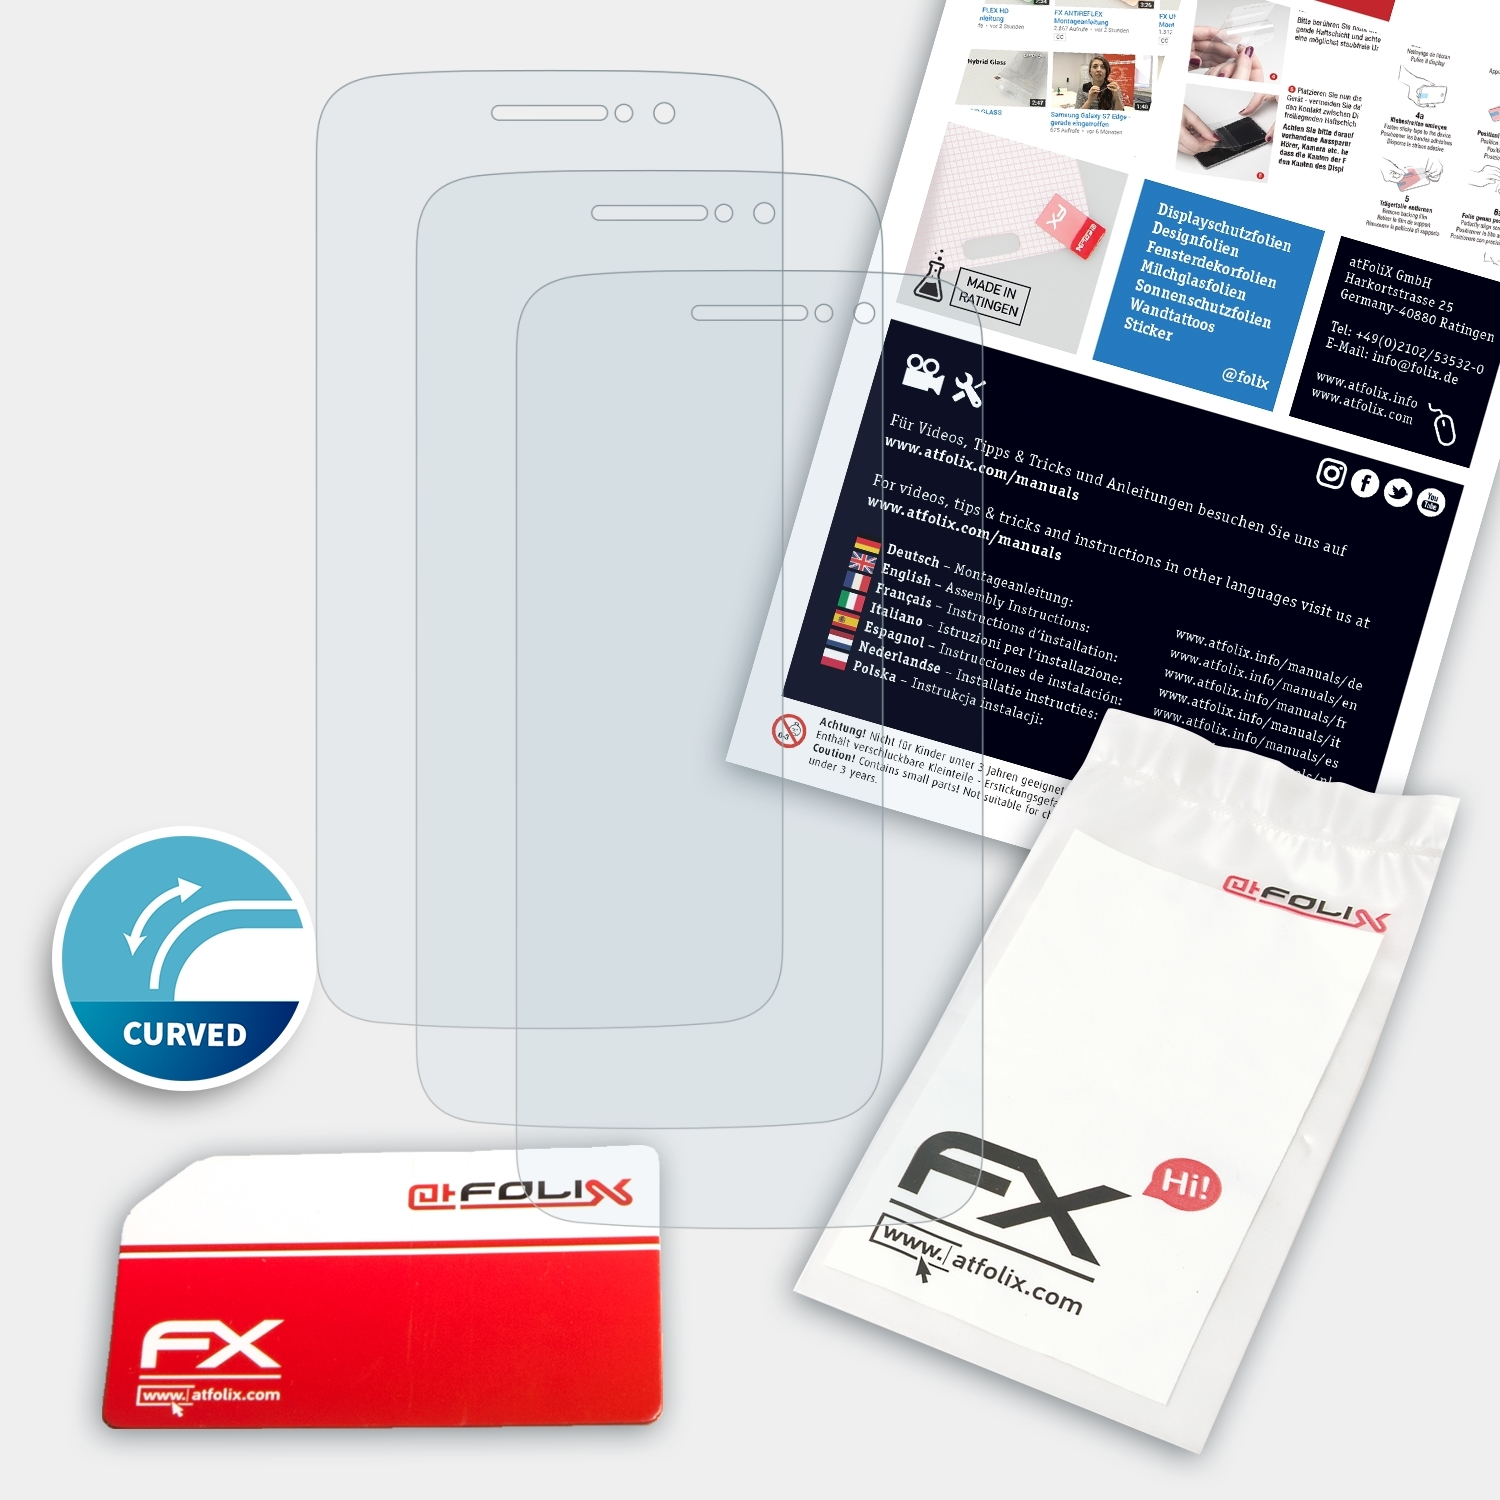 ATFOLIX 3x FX-ActiFleX Lenovo Displayschutz(für Motorola M) Moto